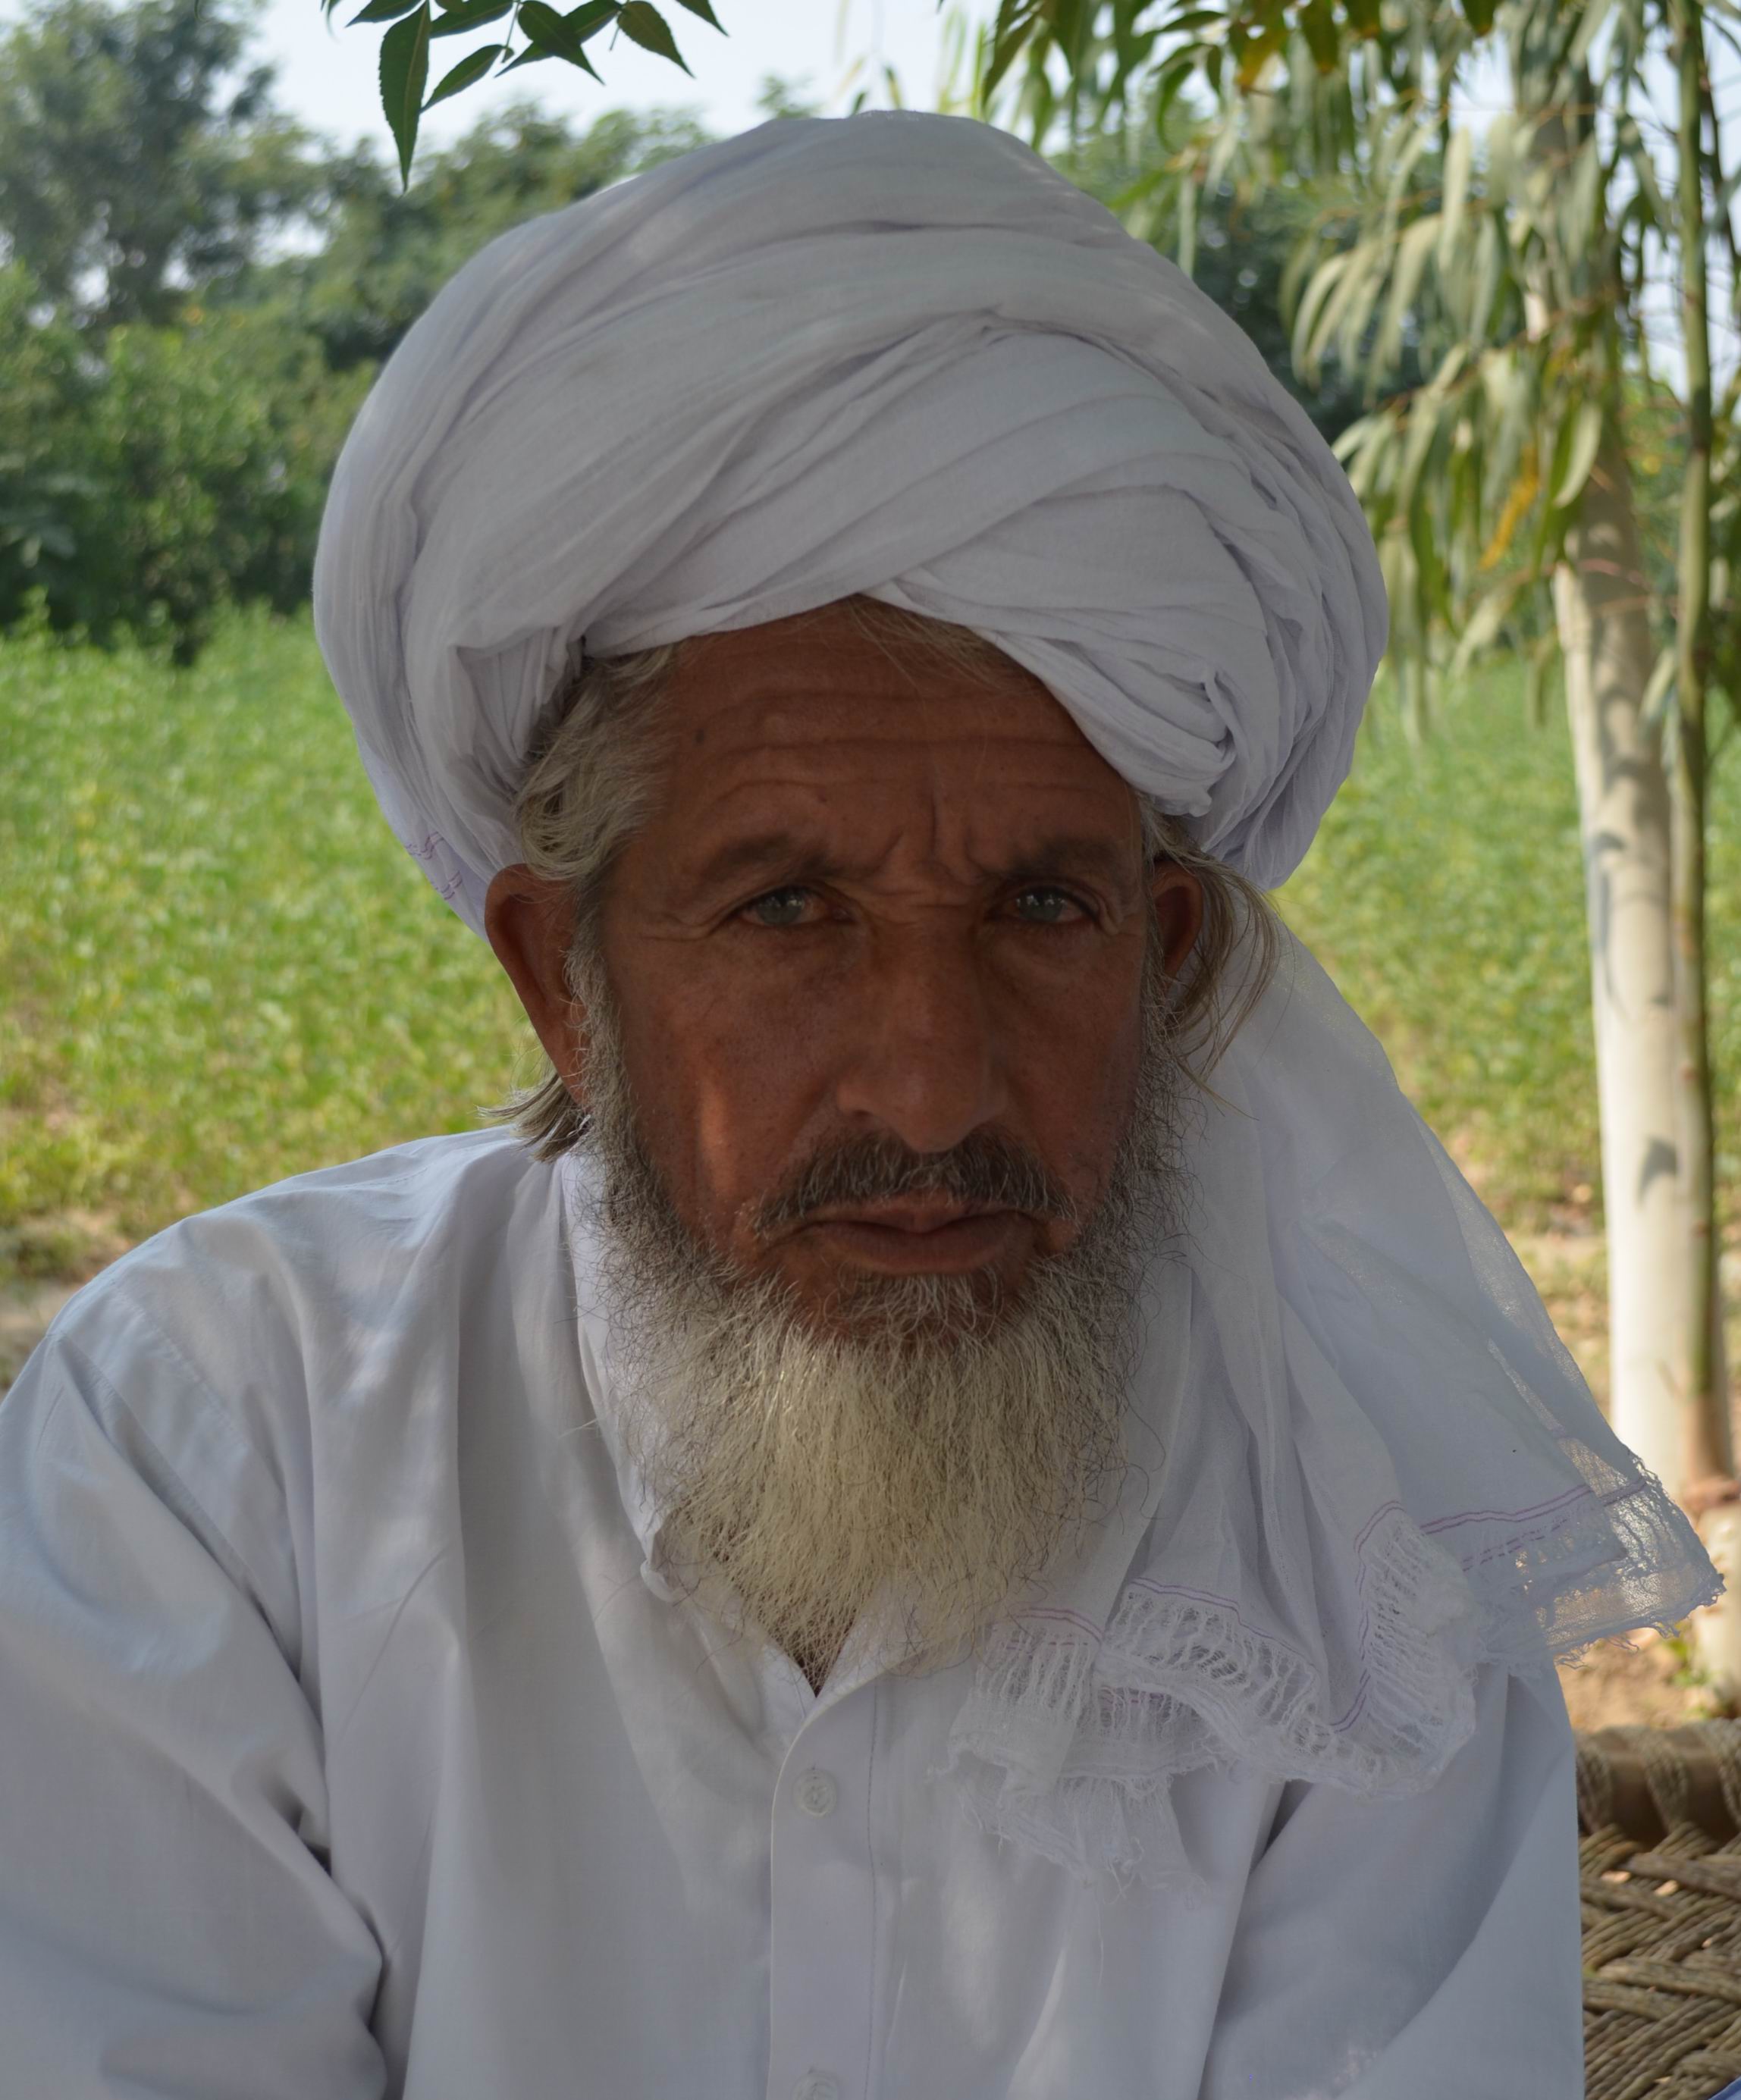 Haji Ahmad